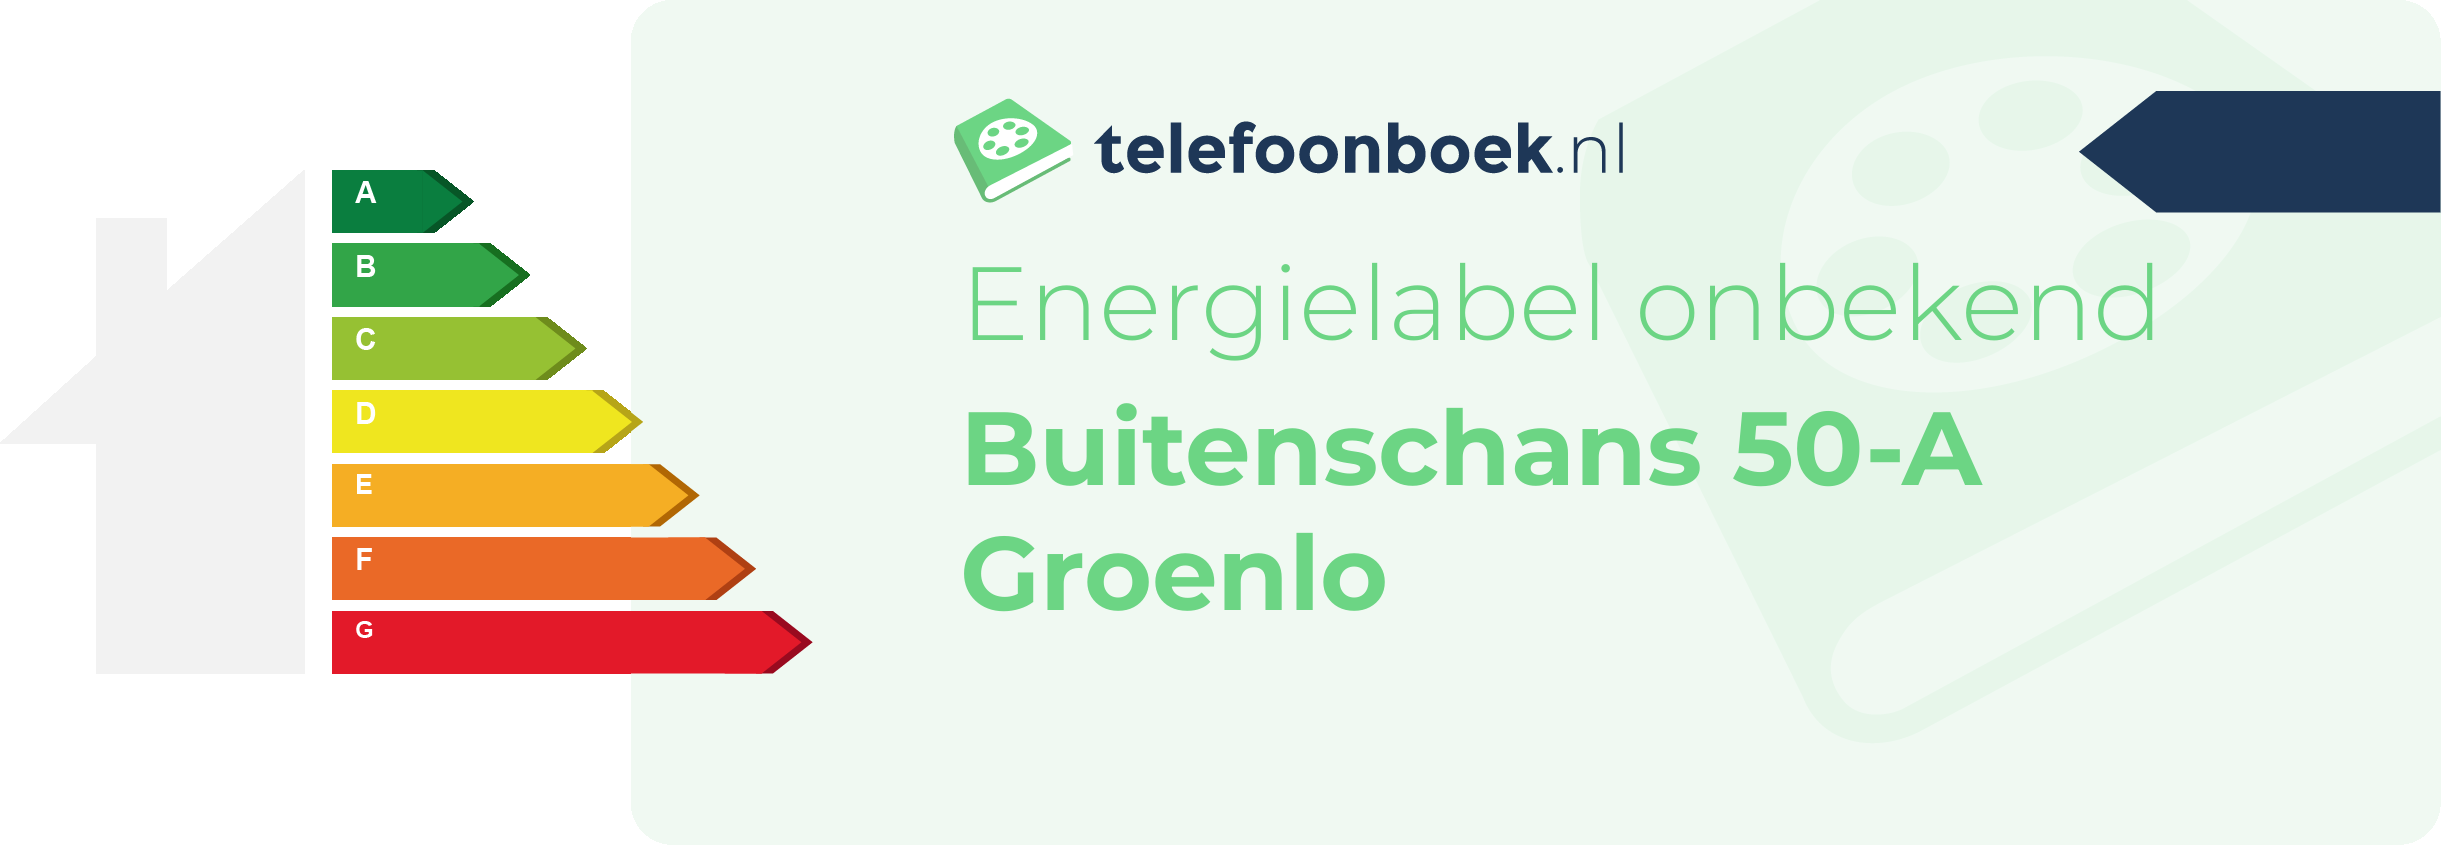 Energielabel Buitenschans 50-A Groenlo